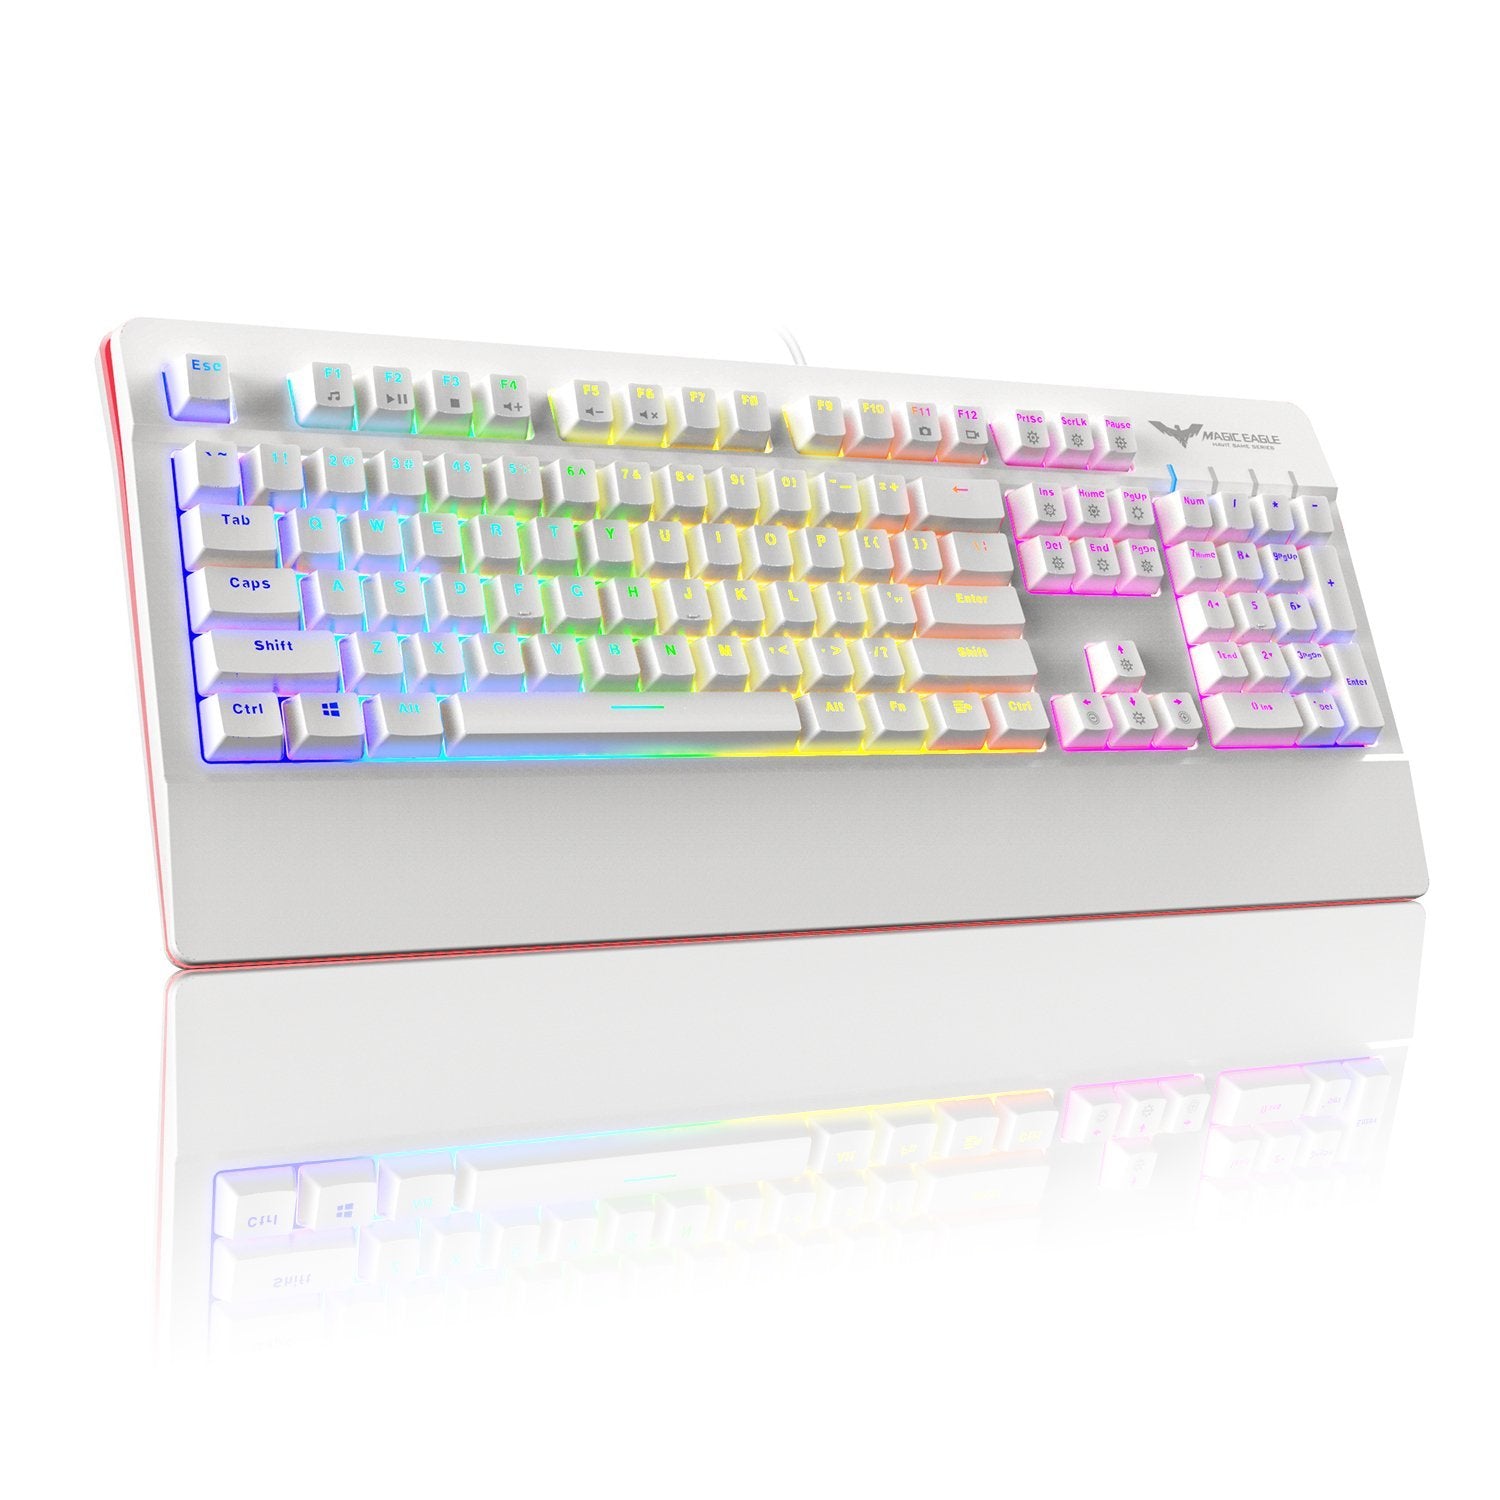 HAVIT HV-KB389L Mechanische Gaming-Tastatur mit RGB-Hintergrundbeleuchtung 